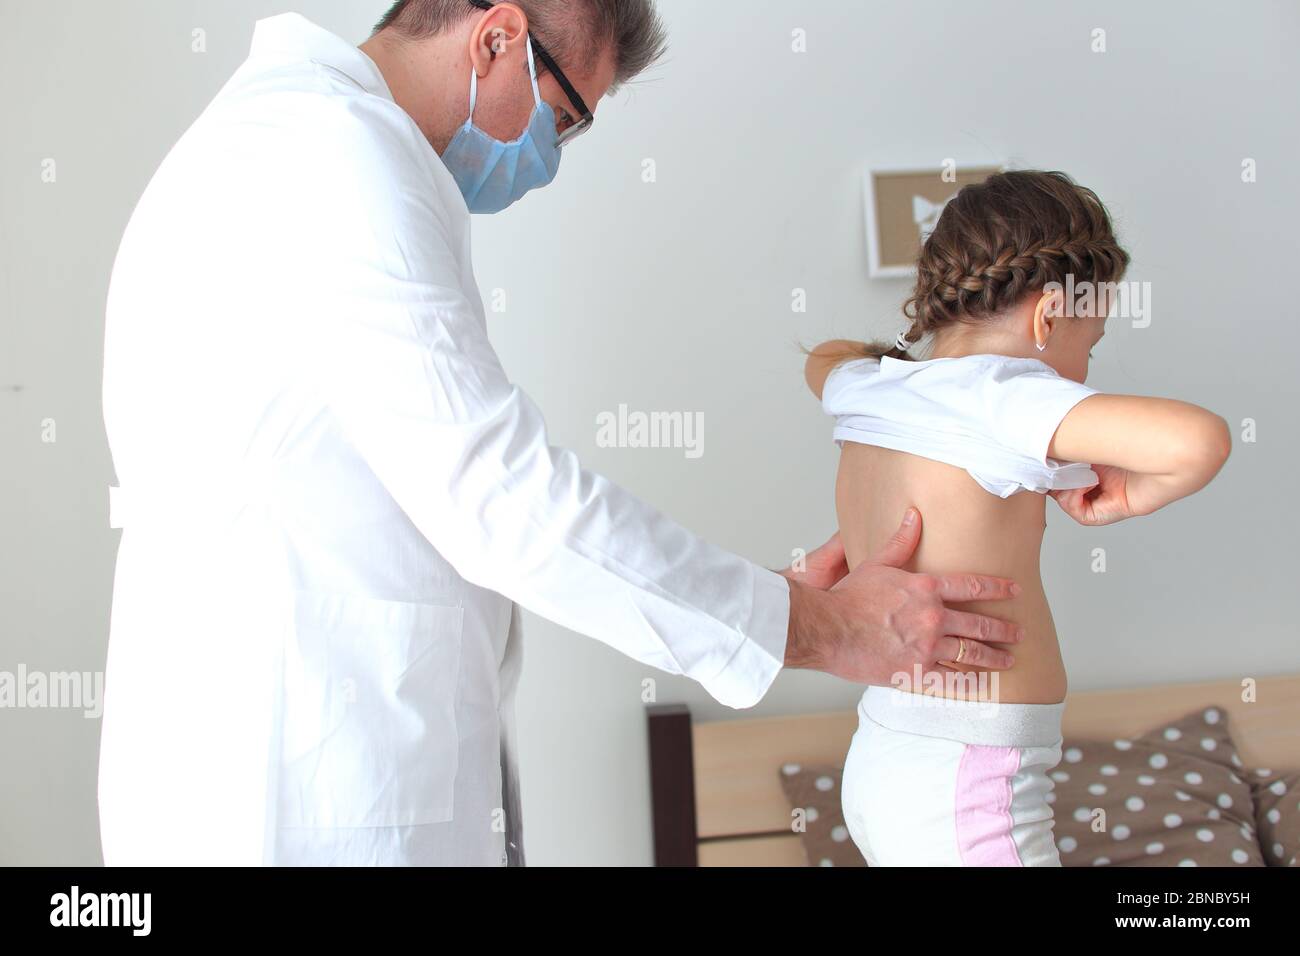 El médico examina a una niña en casa. Foto de stock